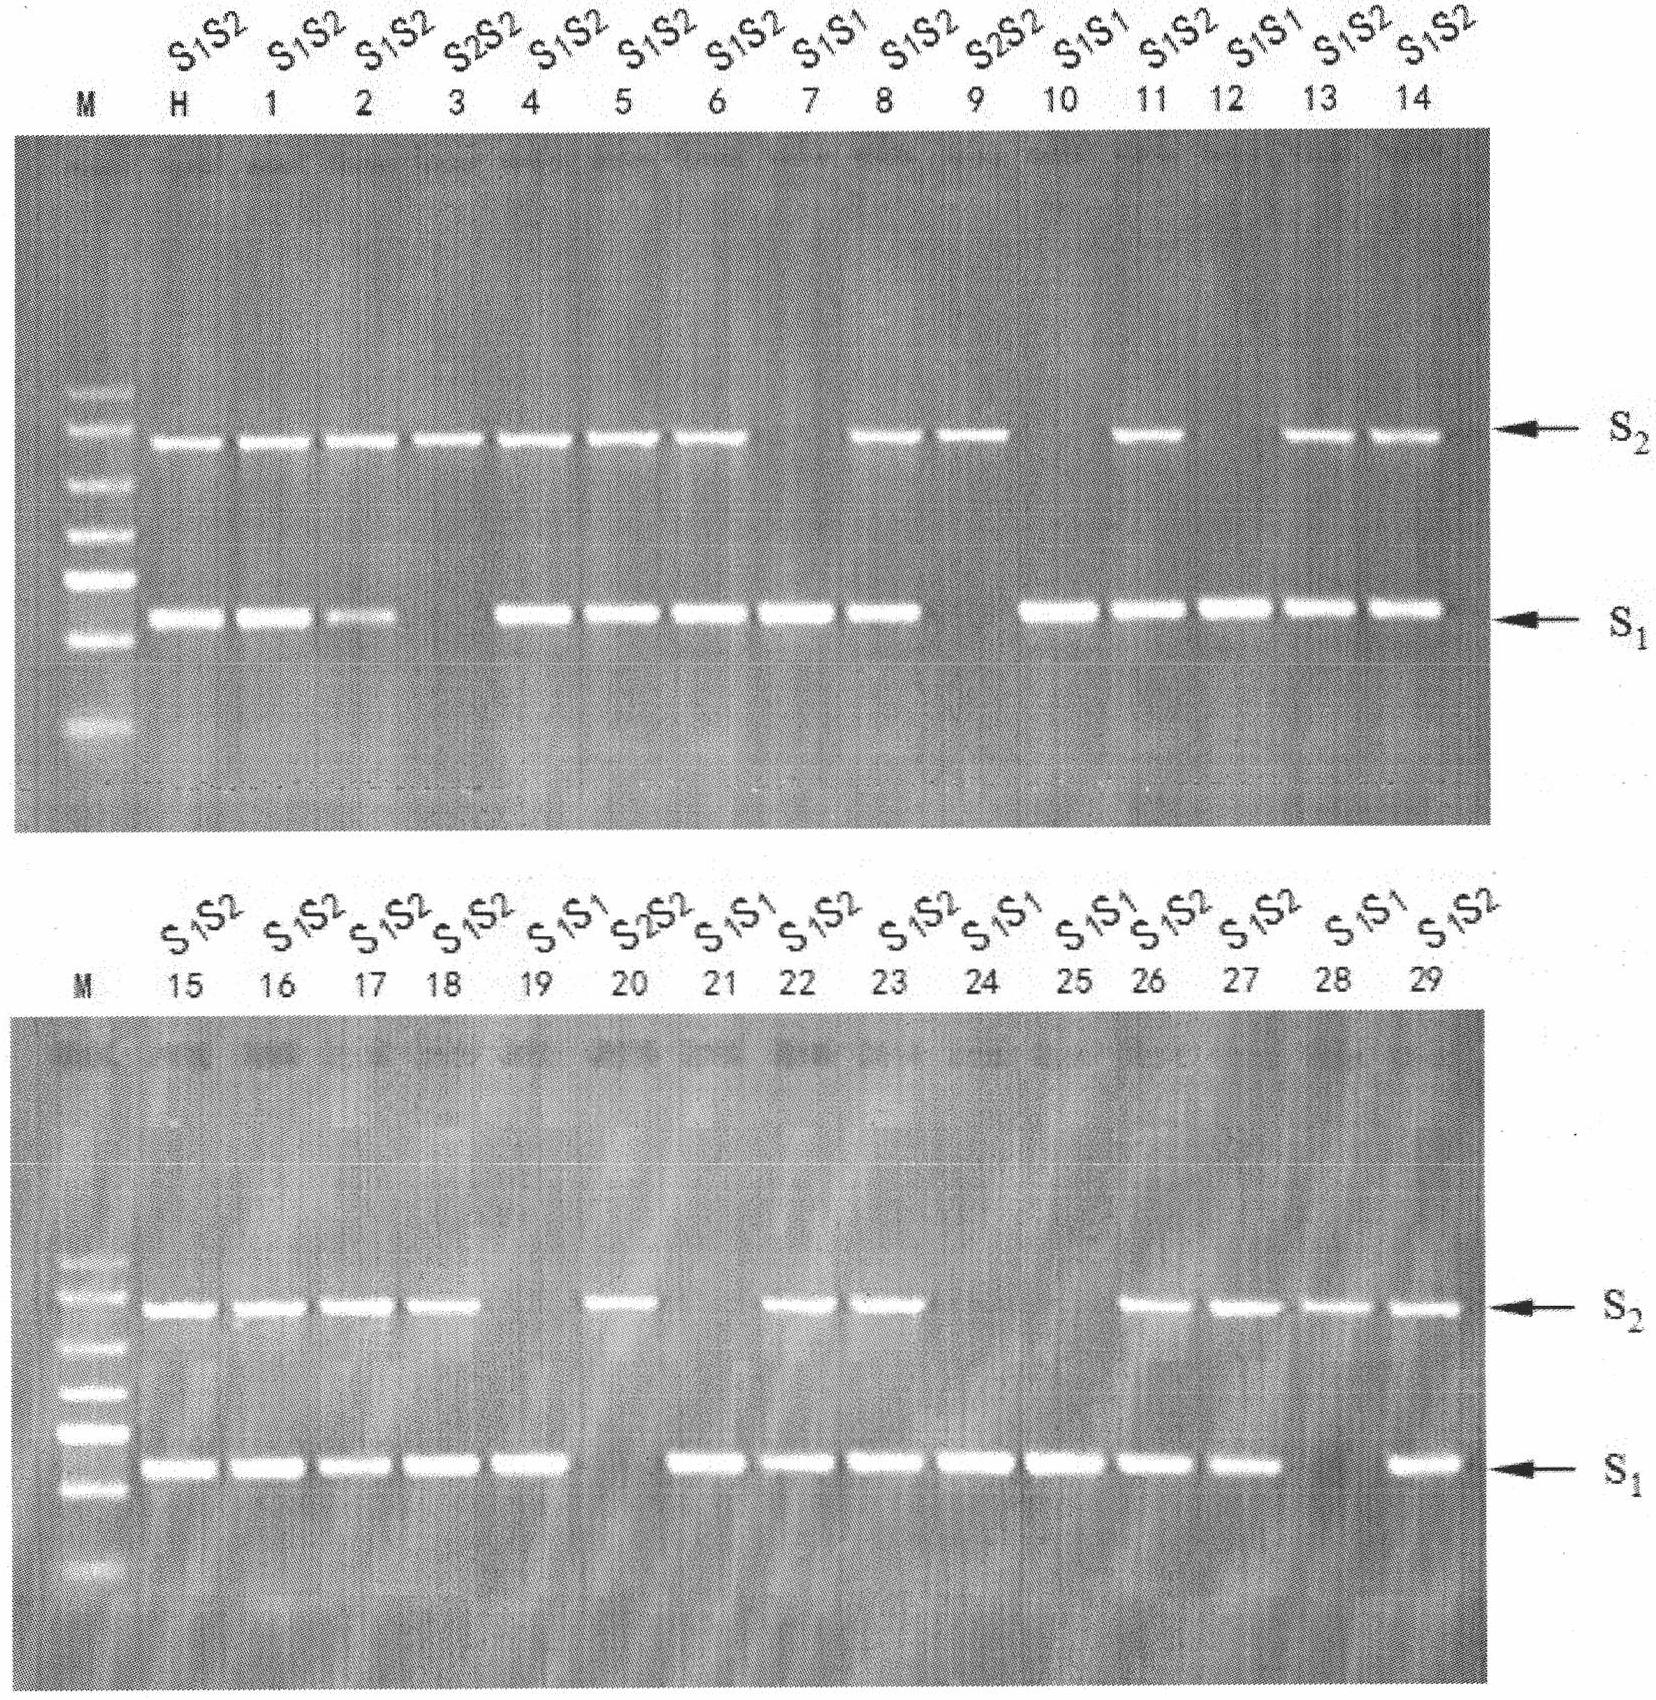 Method for preparing novel germplasm of S gene homozygote by radioactive mutagenesis of pollen